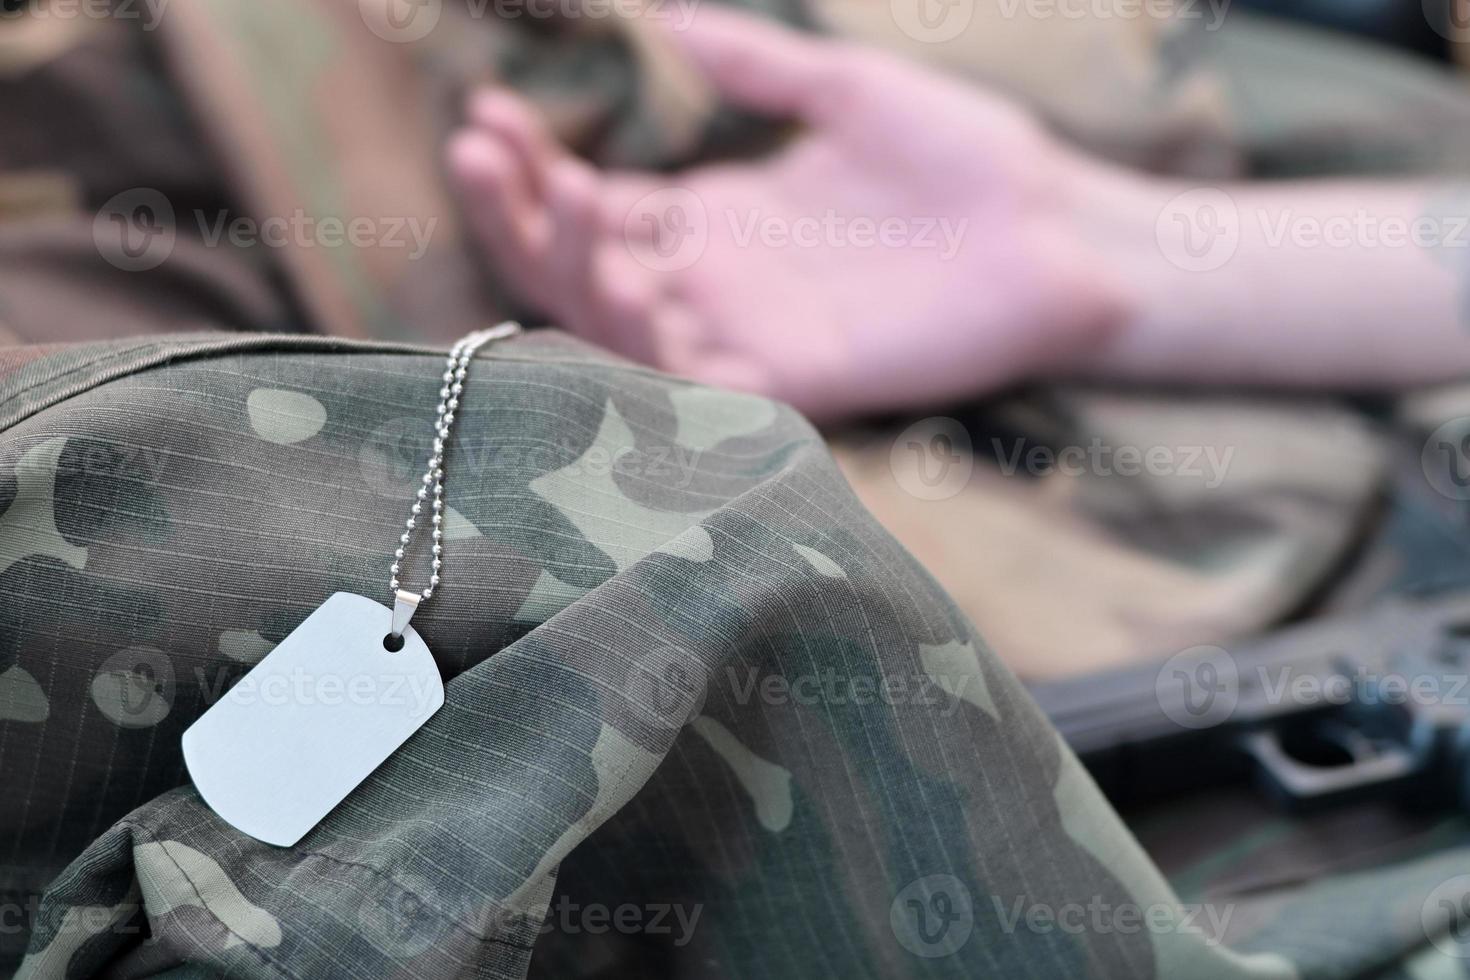 tömma armén tecken av död- militär soldat lögner på kamouflage kläder foto